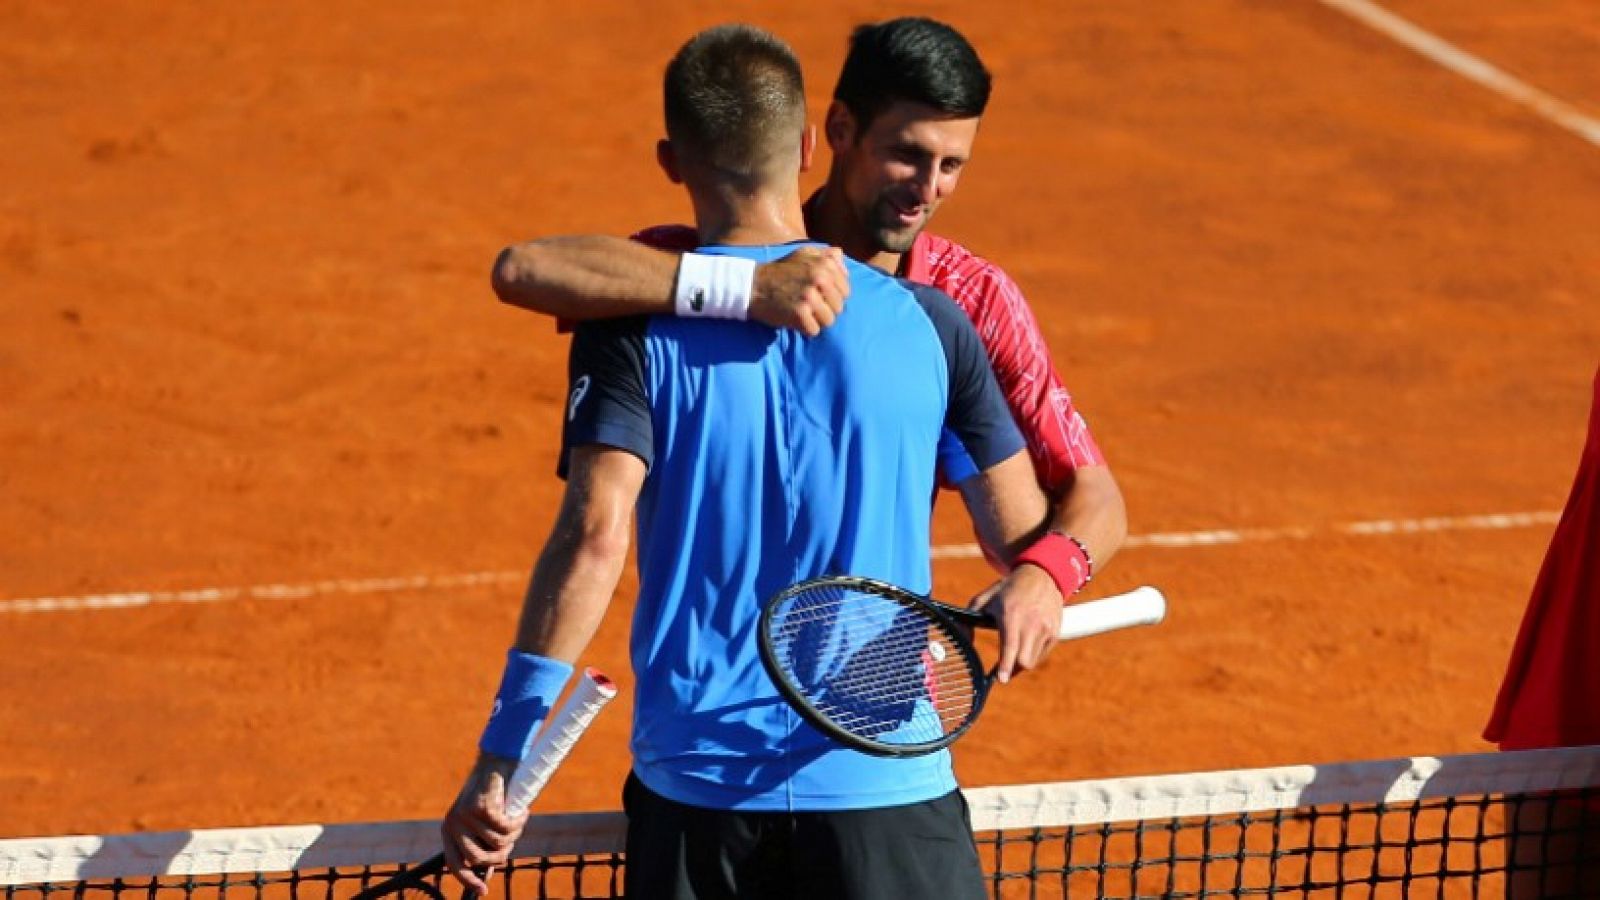 El mundo del tenis, crítico con Djokovic por su positivo por coronavirus